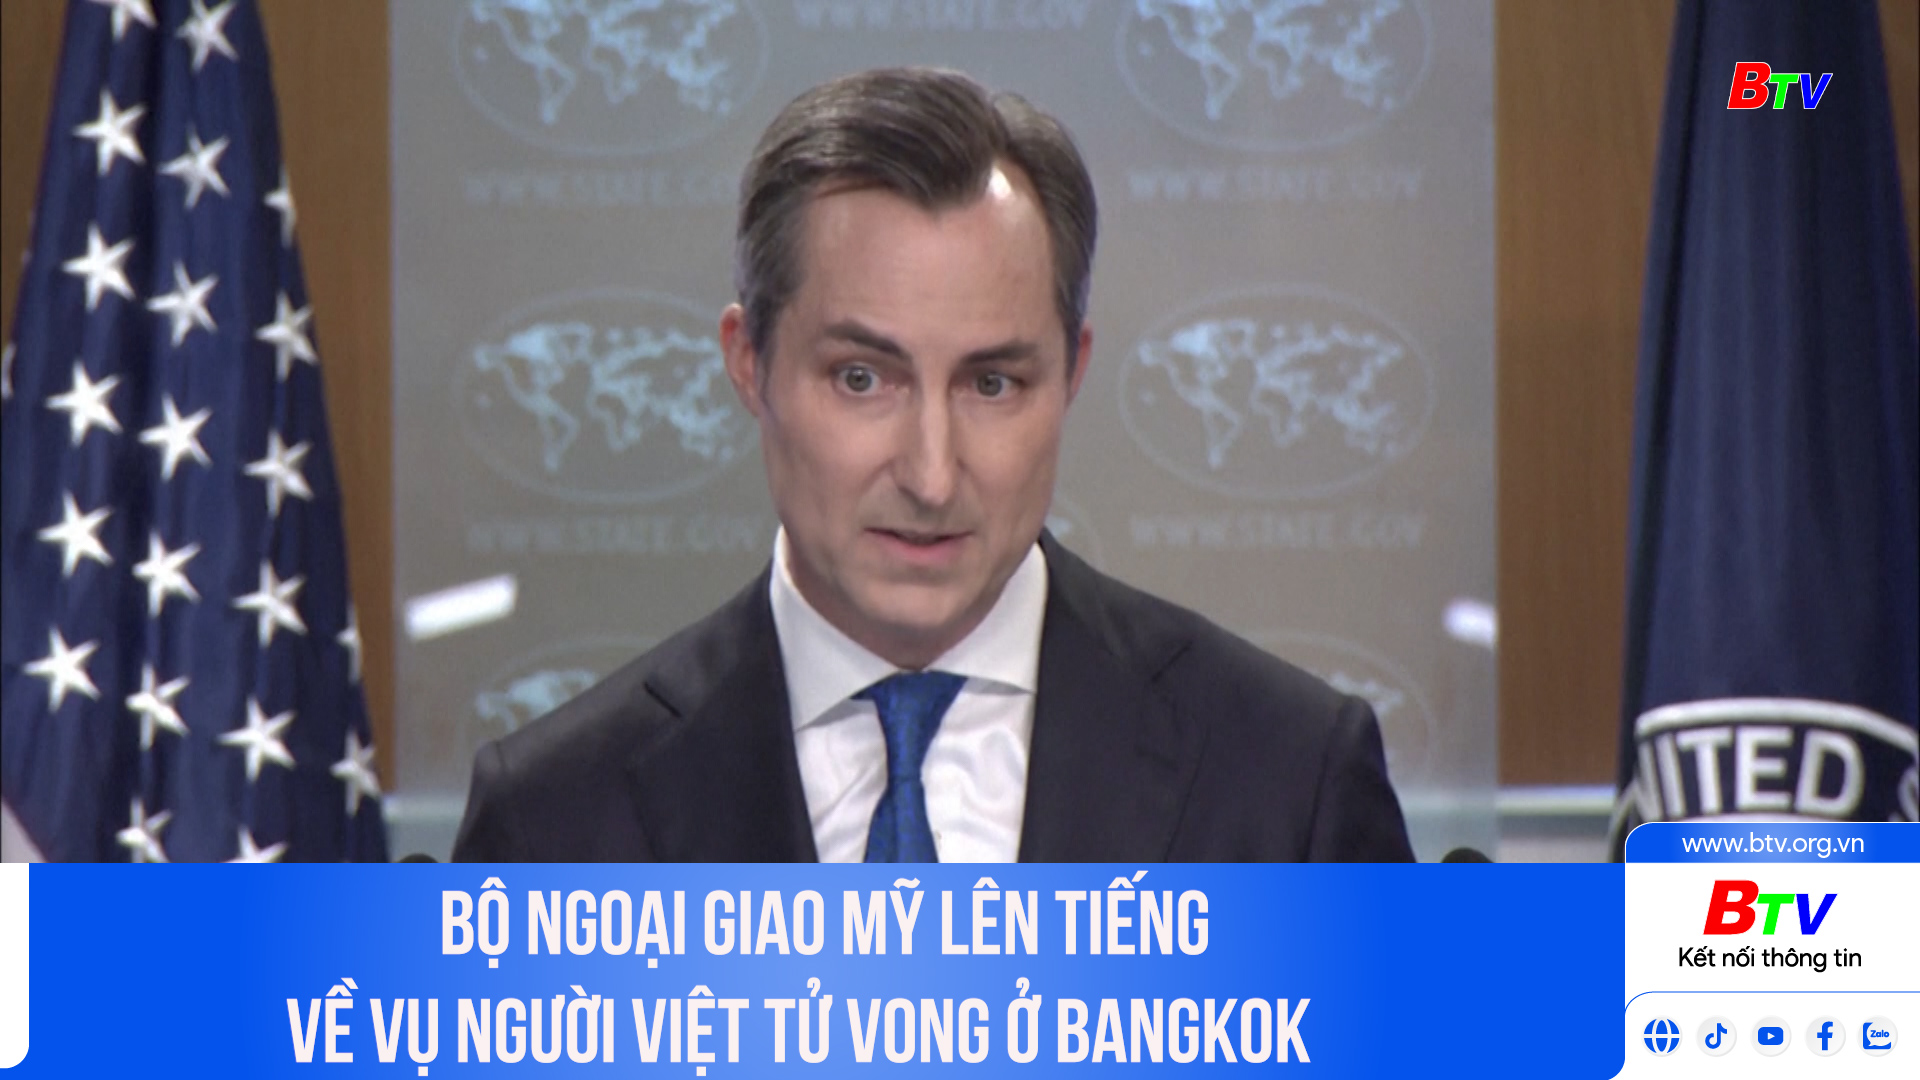 Bộ Ngoại giao Mỹ lên tiếng về vụ người Việt tử vong ở Bangkok